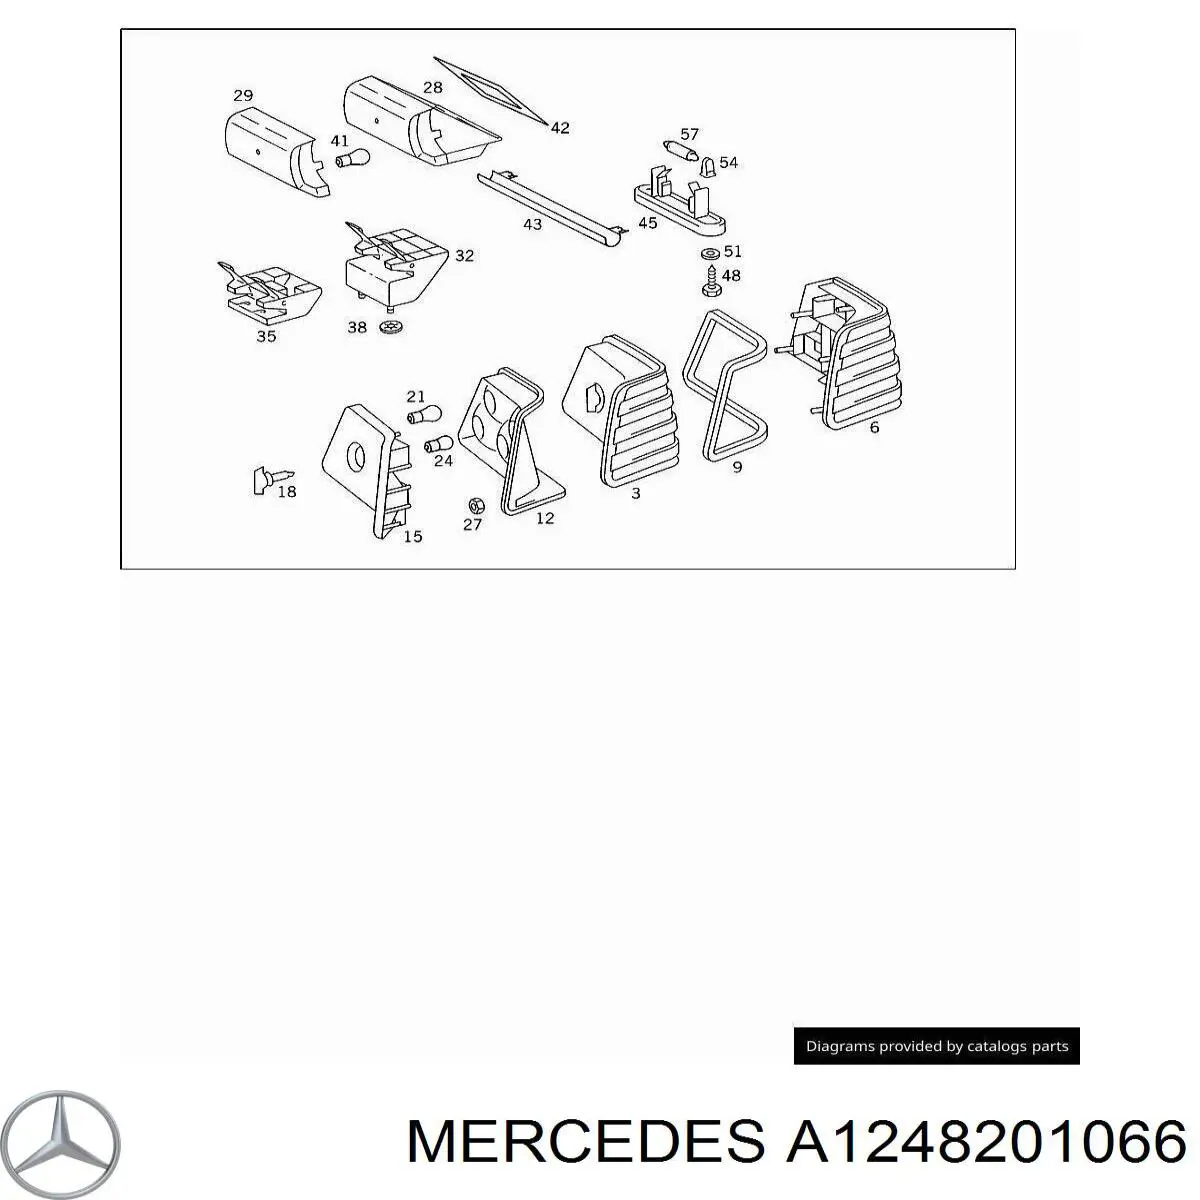 1248201066 Mercedes piloto posterior derecho